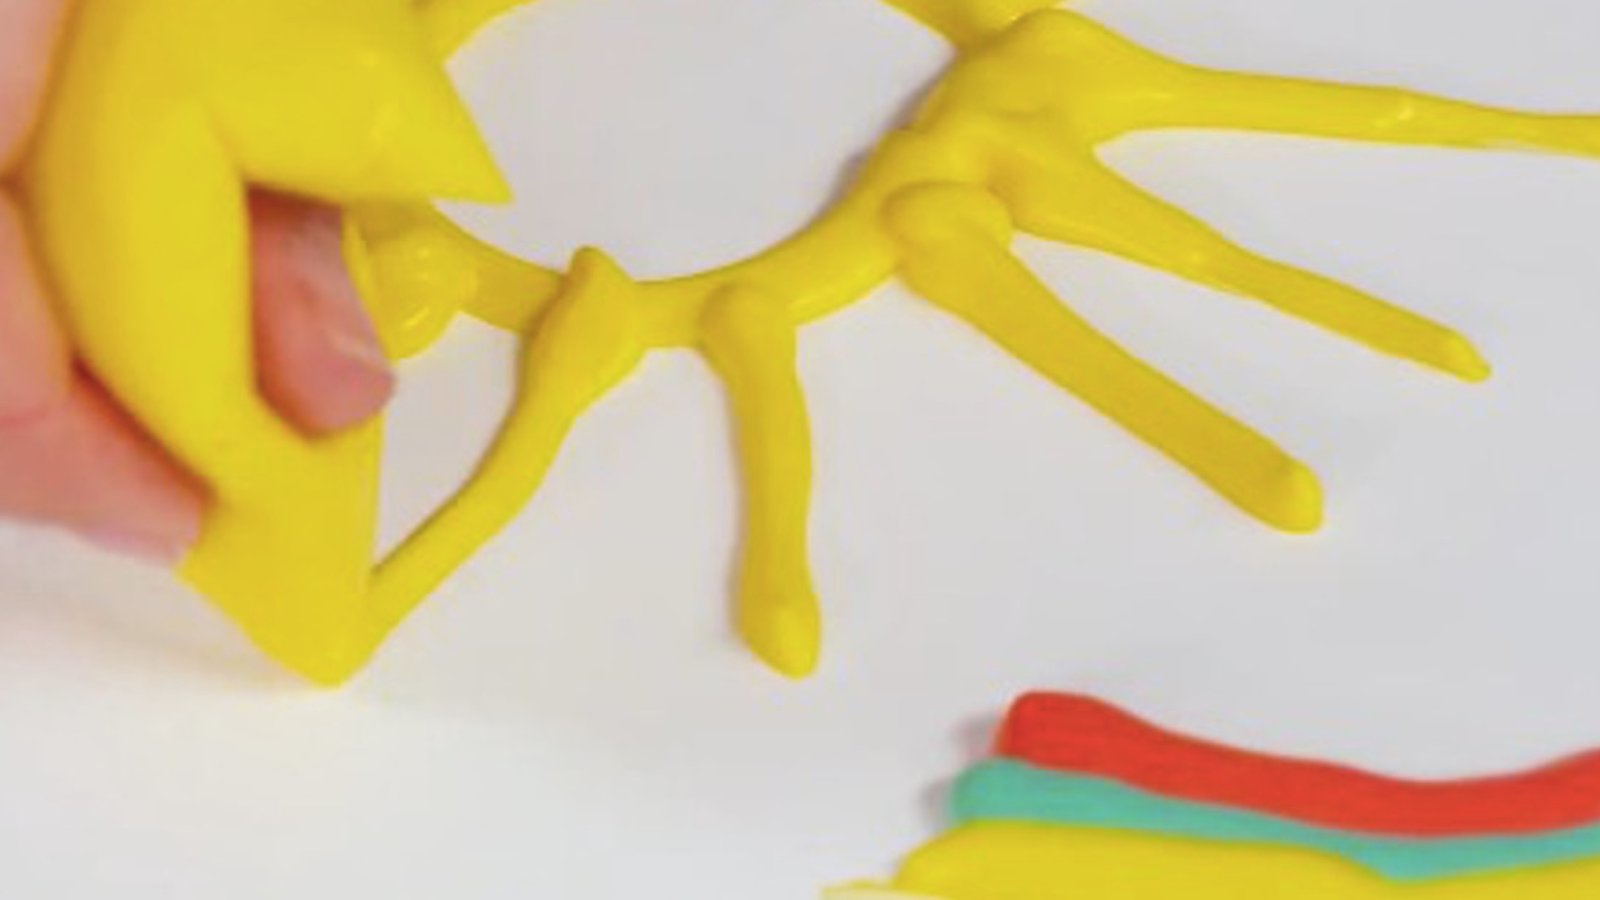 Vous pouvez créer de la peinture 3D à l'aide de seulement 3 ingrédients que vous avez à la maison